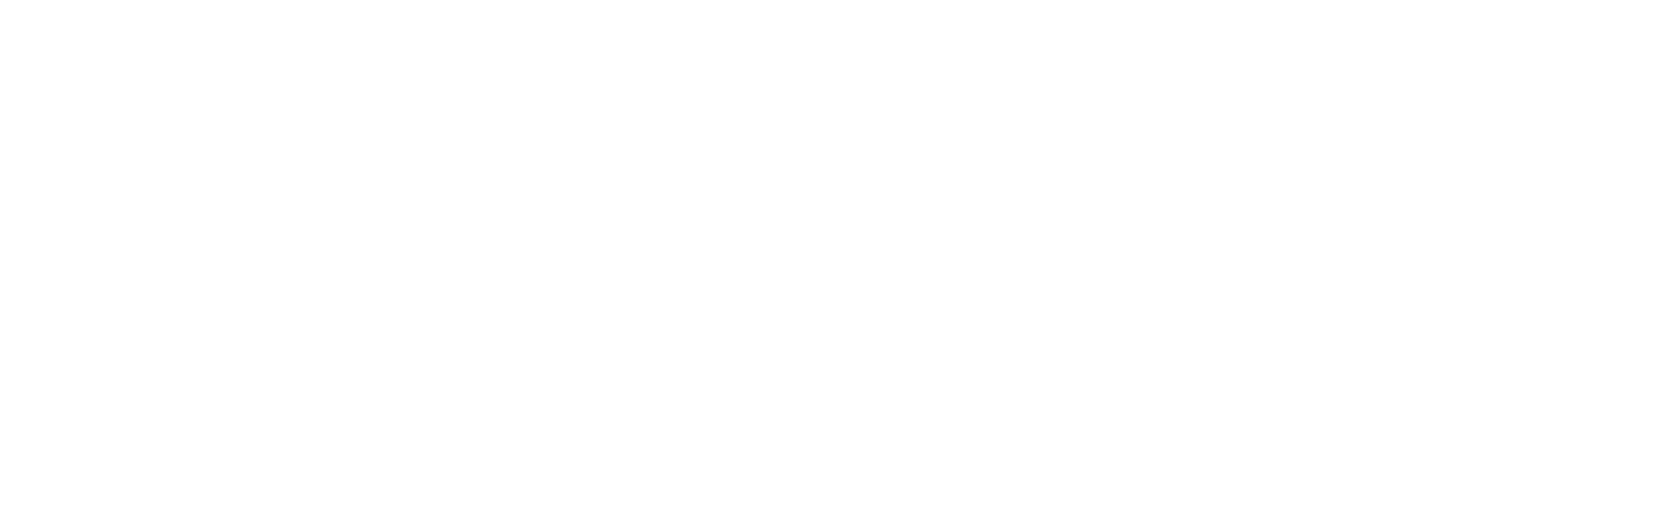 pgim-white-1